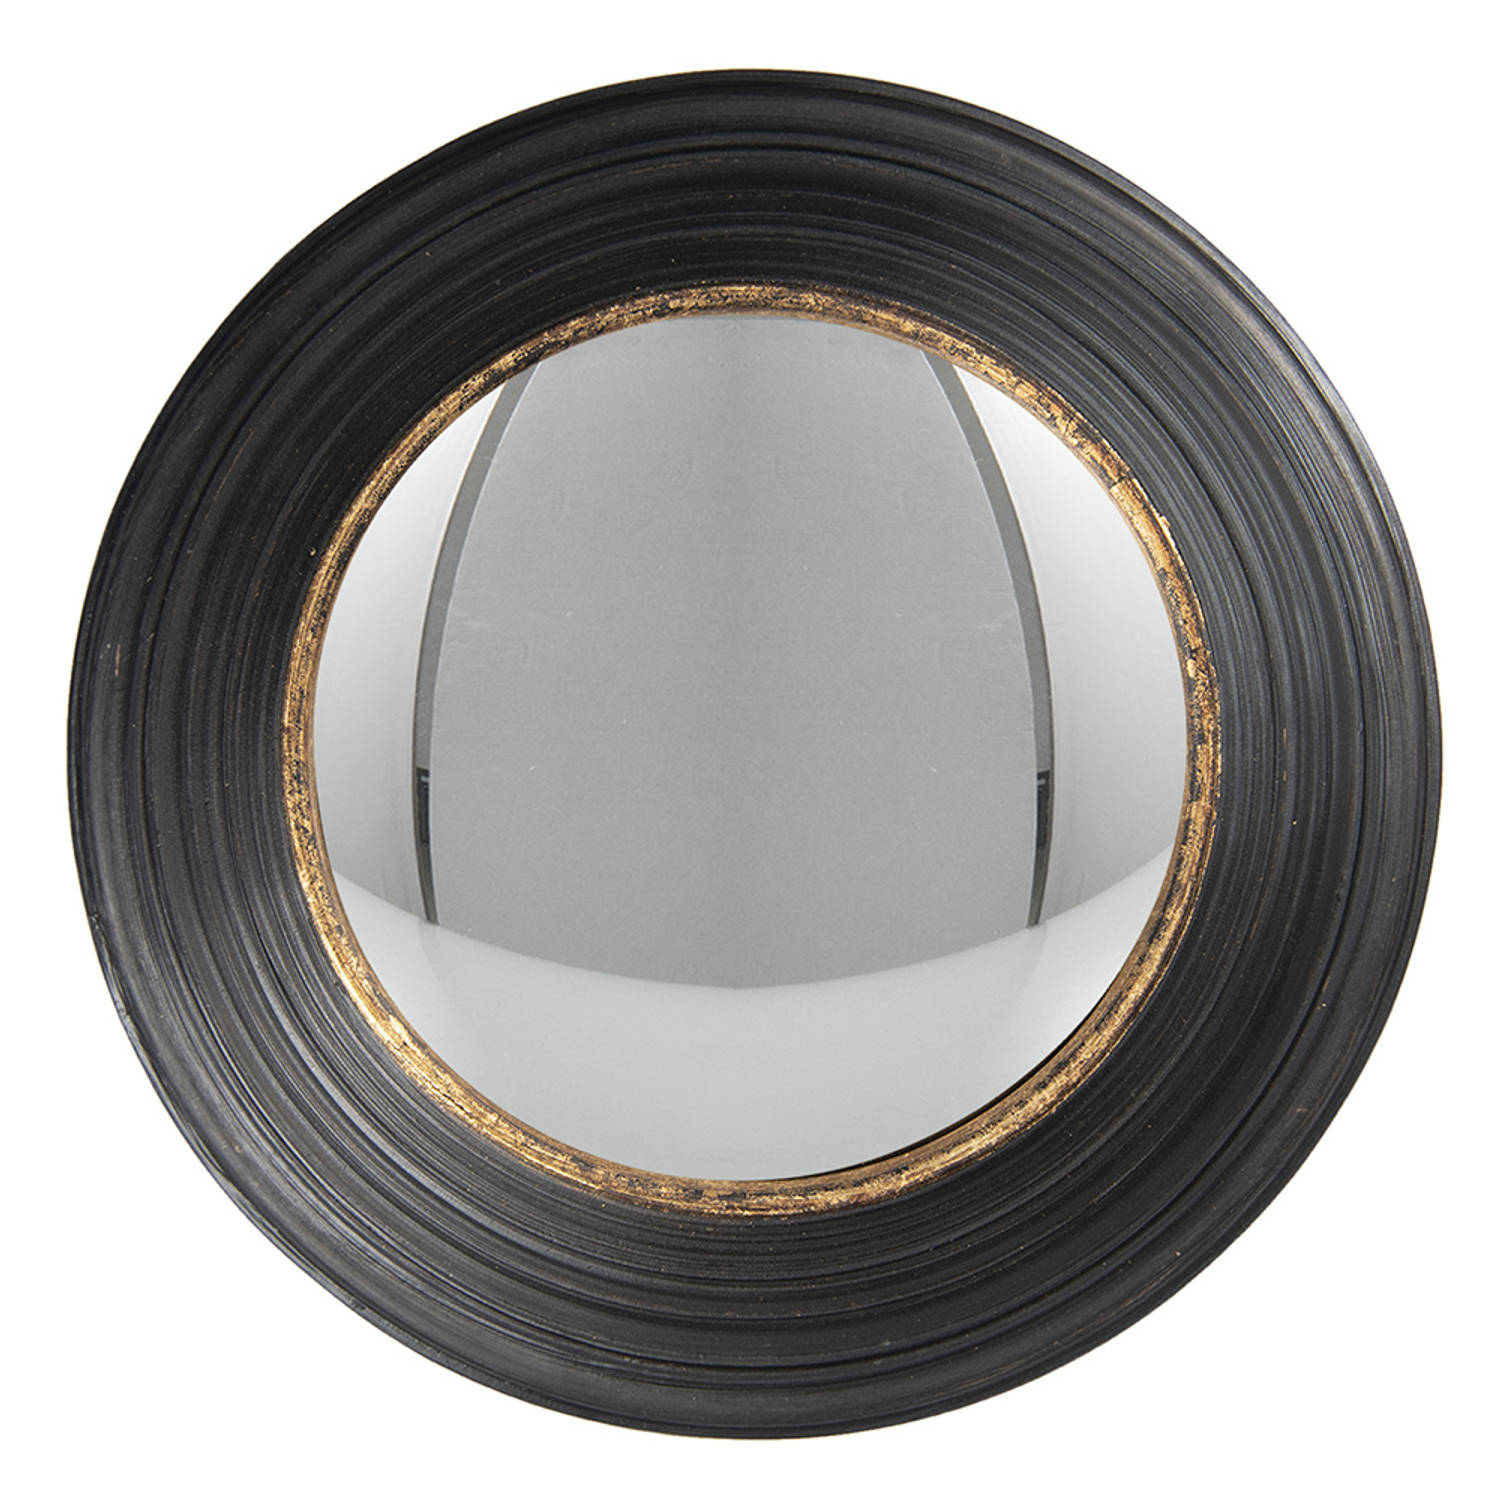 HAES DECO Bolle ronde Spiegel Zwart Ø 34x6 cm Polyurethaan ( PU) Wandspiegel, Spiegel rond, Convex G